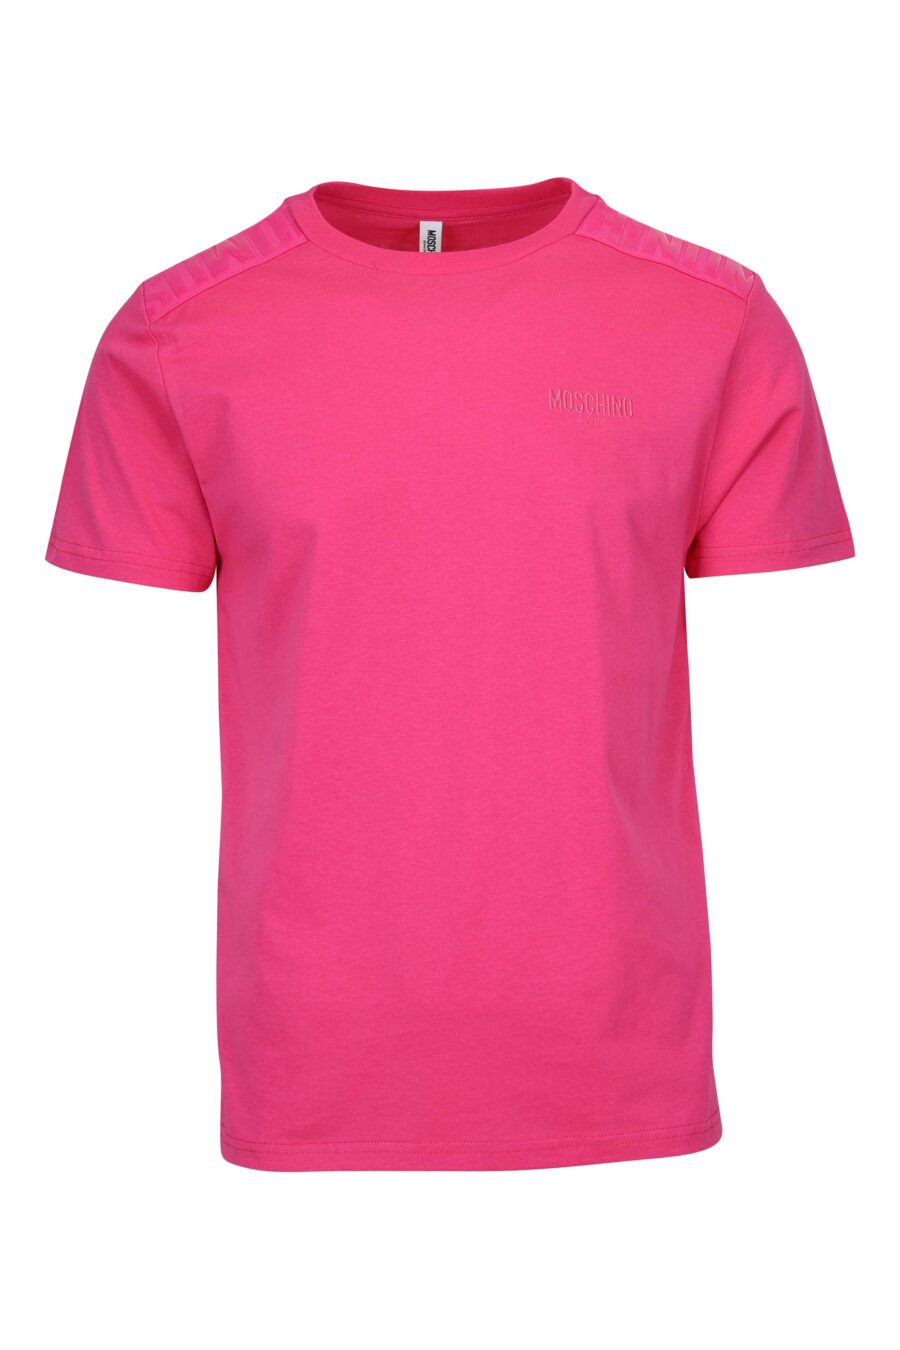 T-shirt fuchsia avec logo en caoutchouc monochrome sur les épaules - 667113671888